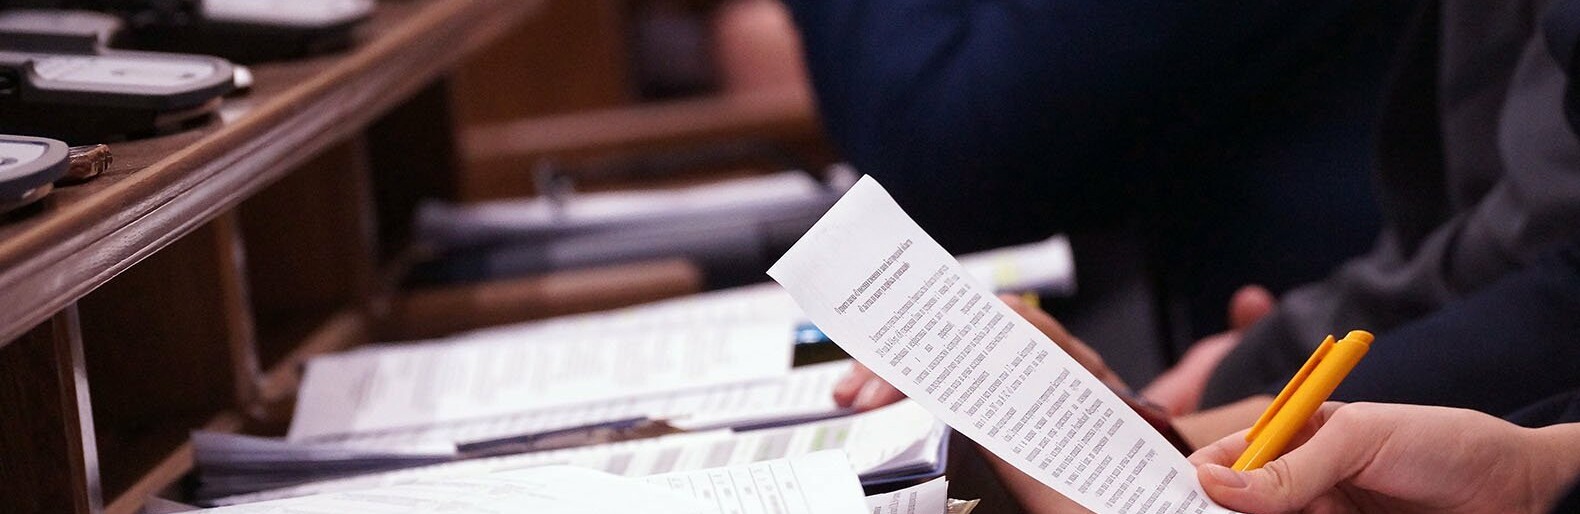 Белгородские депутаты Госдумы и сенаторы перестанут отчитываться о доходах